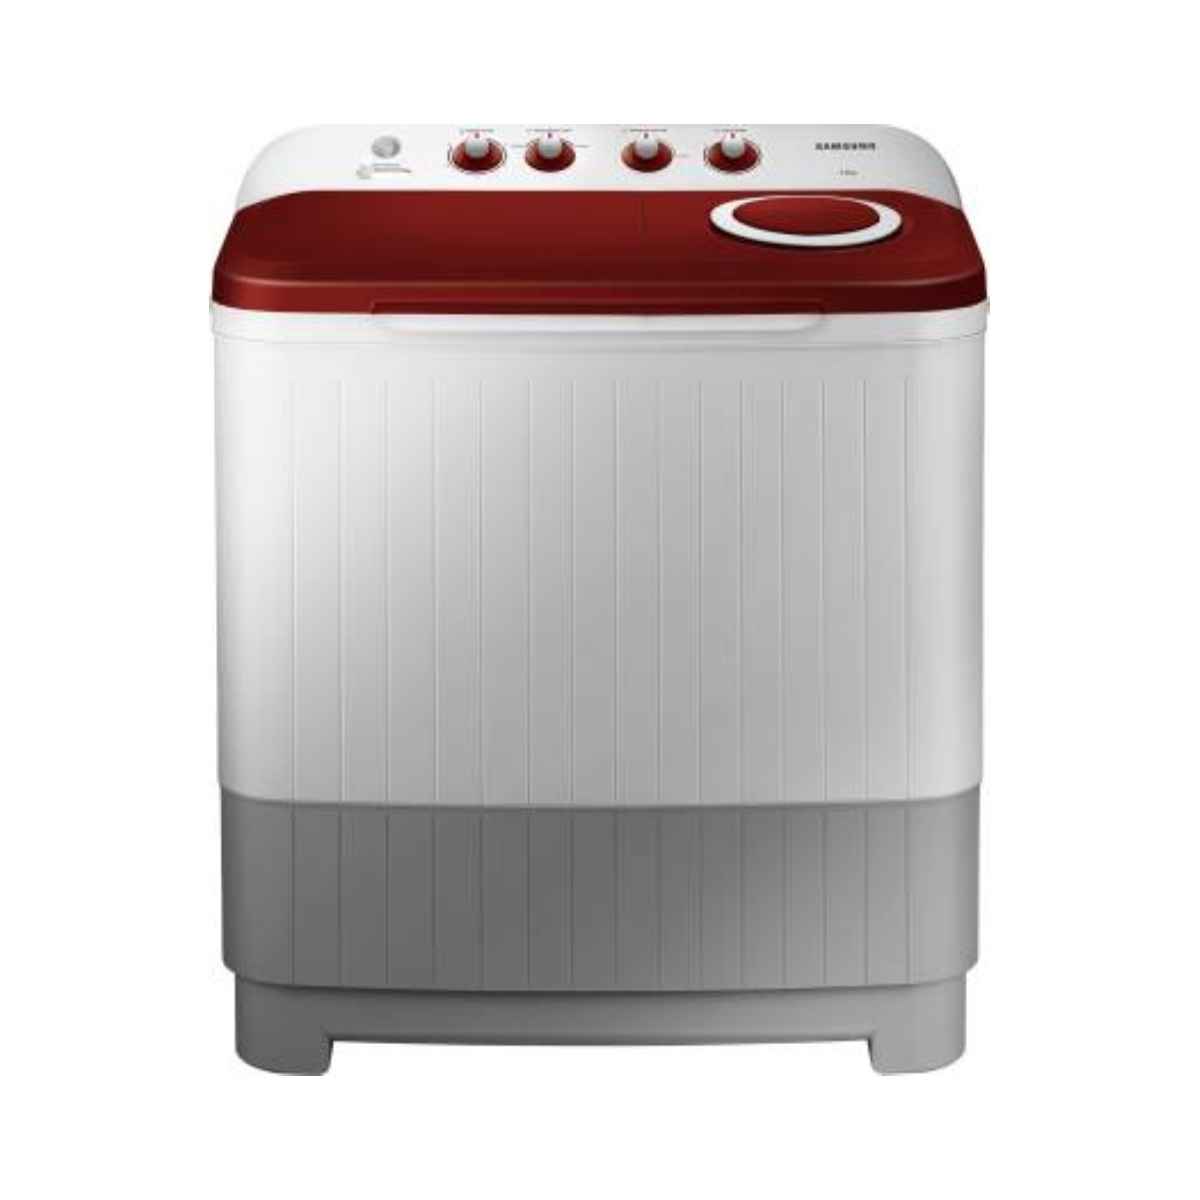 சேம்சங் 7 kg Semi Automatic மேலே Load washing machine (WT70M3000HP/TL) 